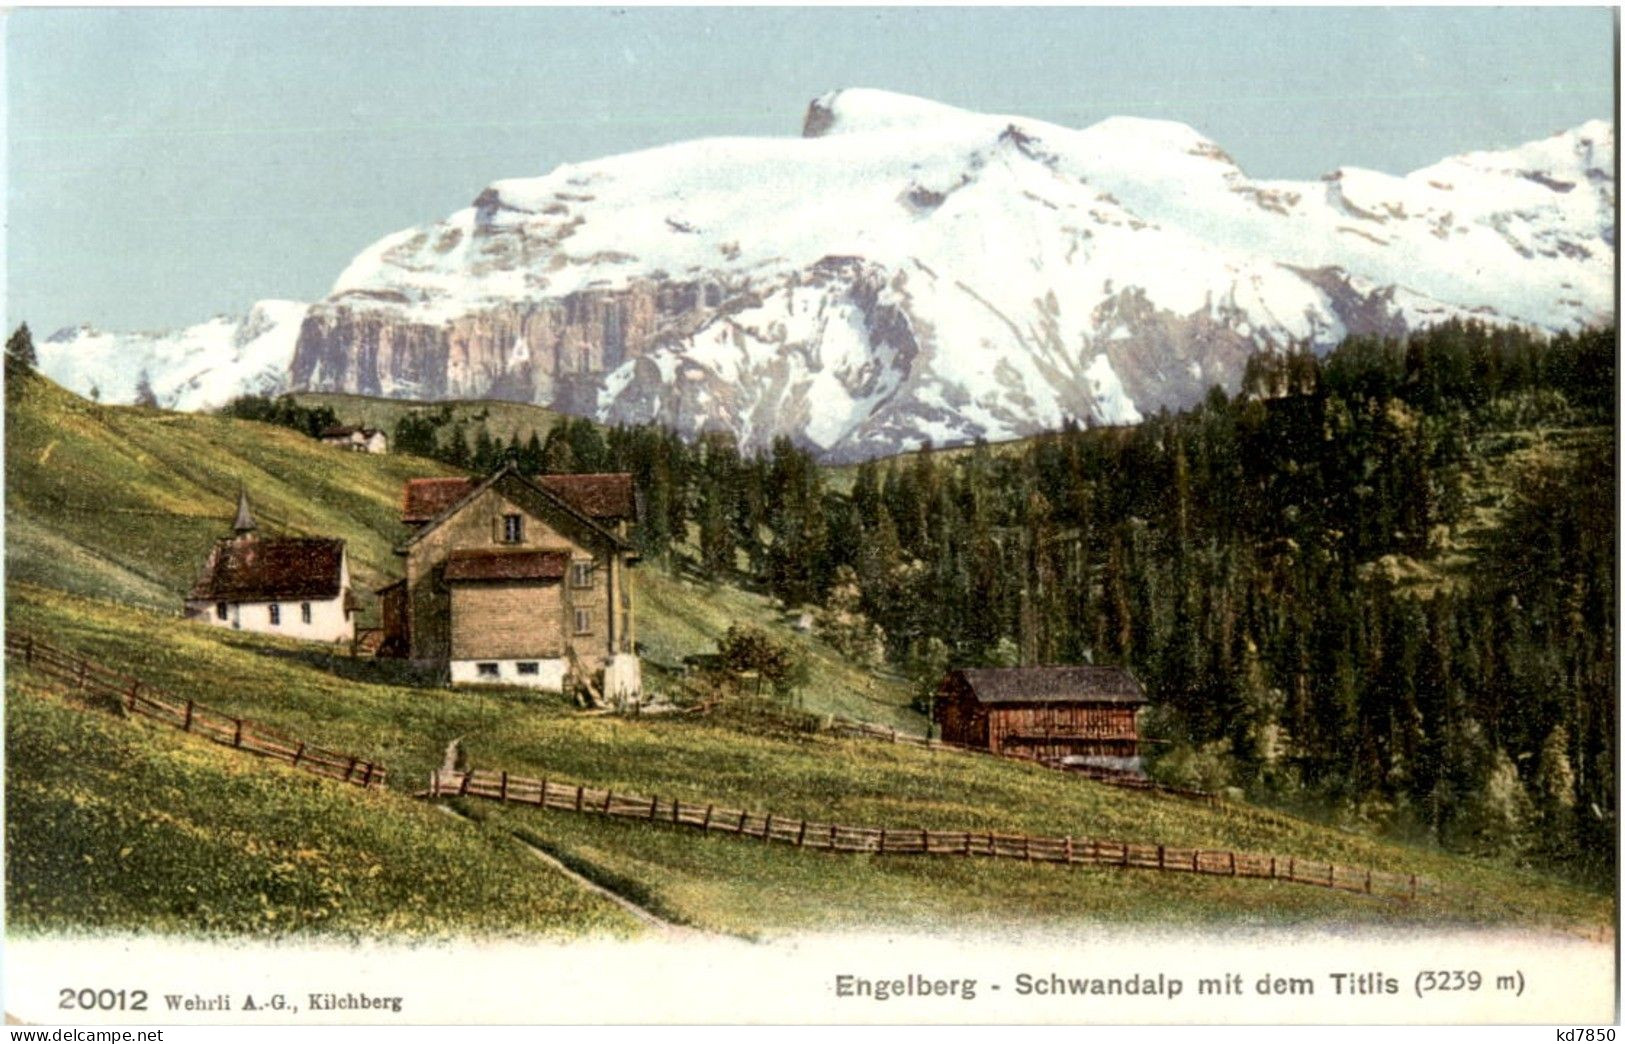 Engelberg - Engelberg